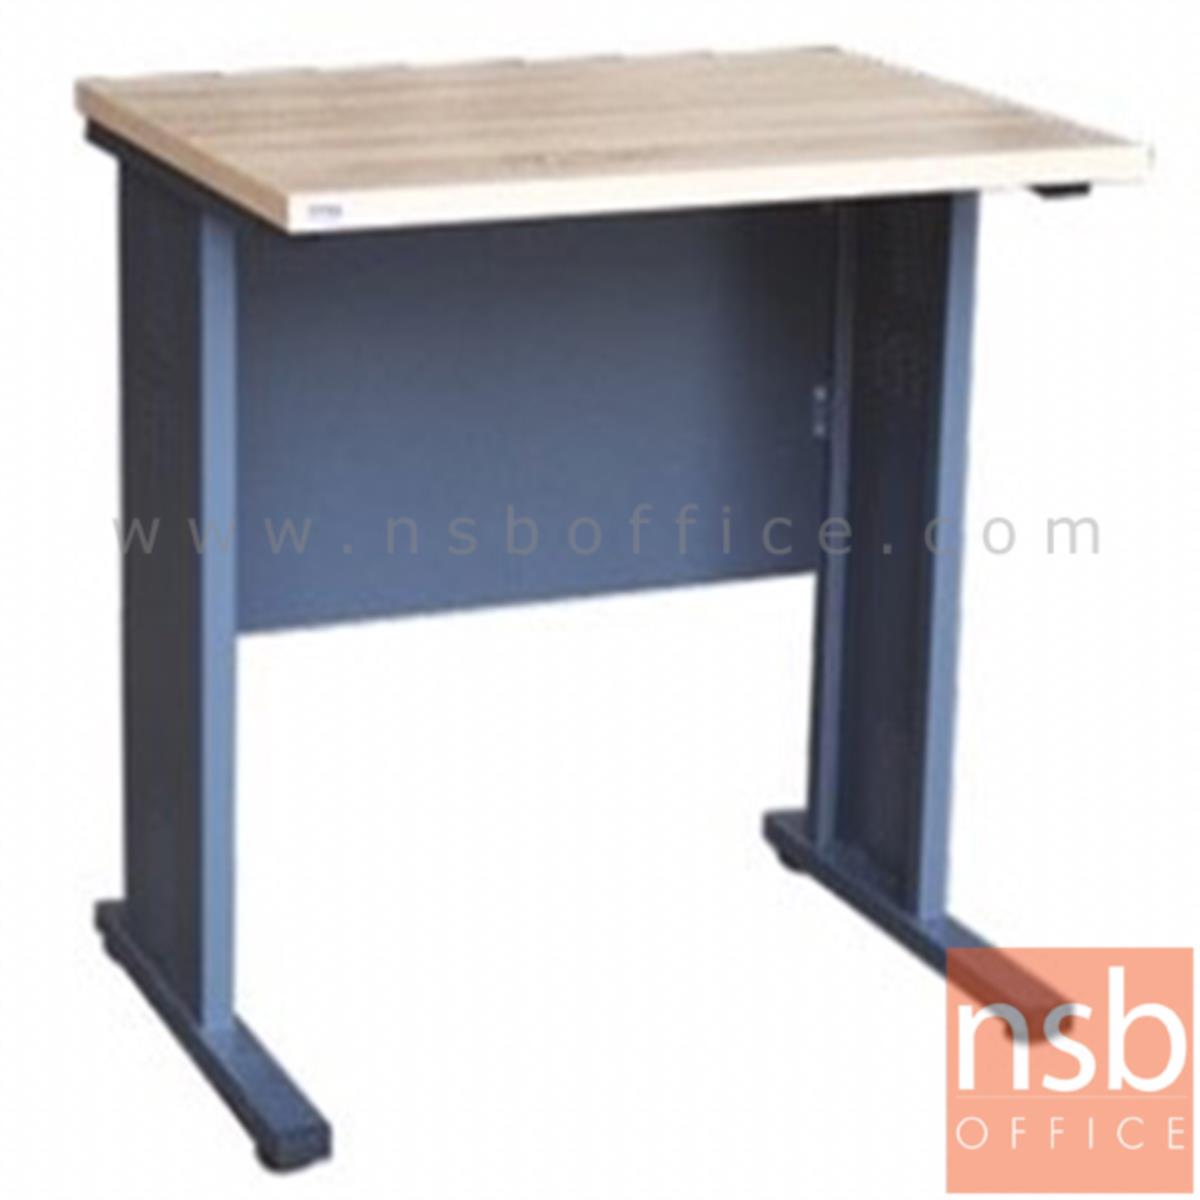 A10A063:โต๊ะทำงาน  รุ่น Carrow (แคร์โรว์) ขนาด 80W cm. ขาเหล็ก 